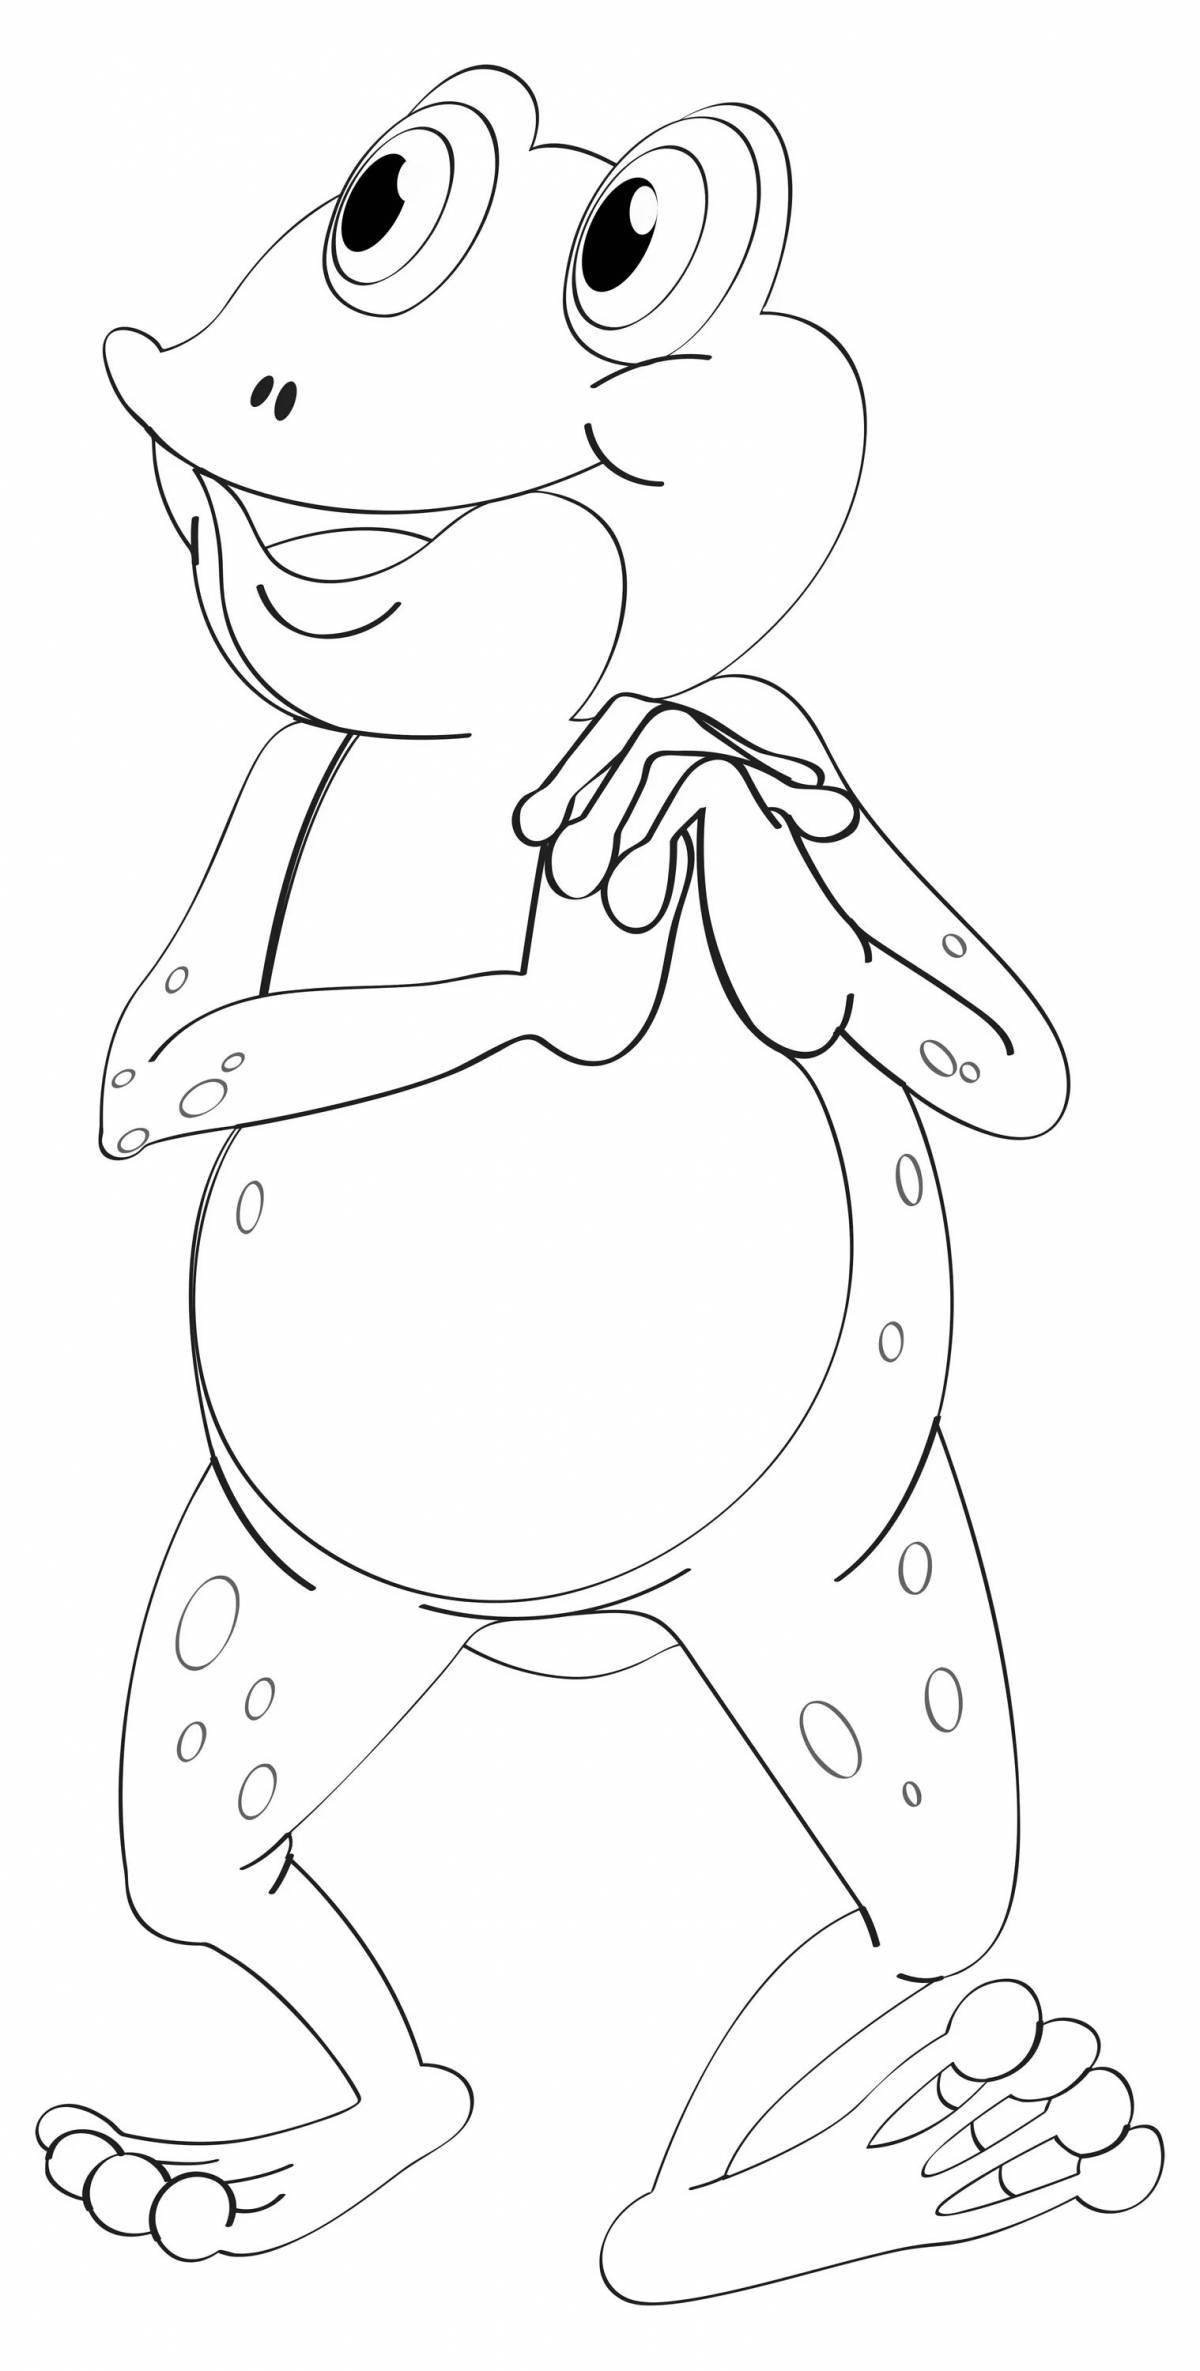 Юмористическая лягушка-путешественник раскраска для детей